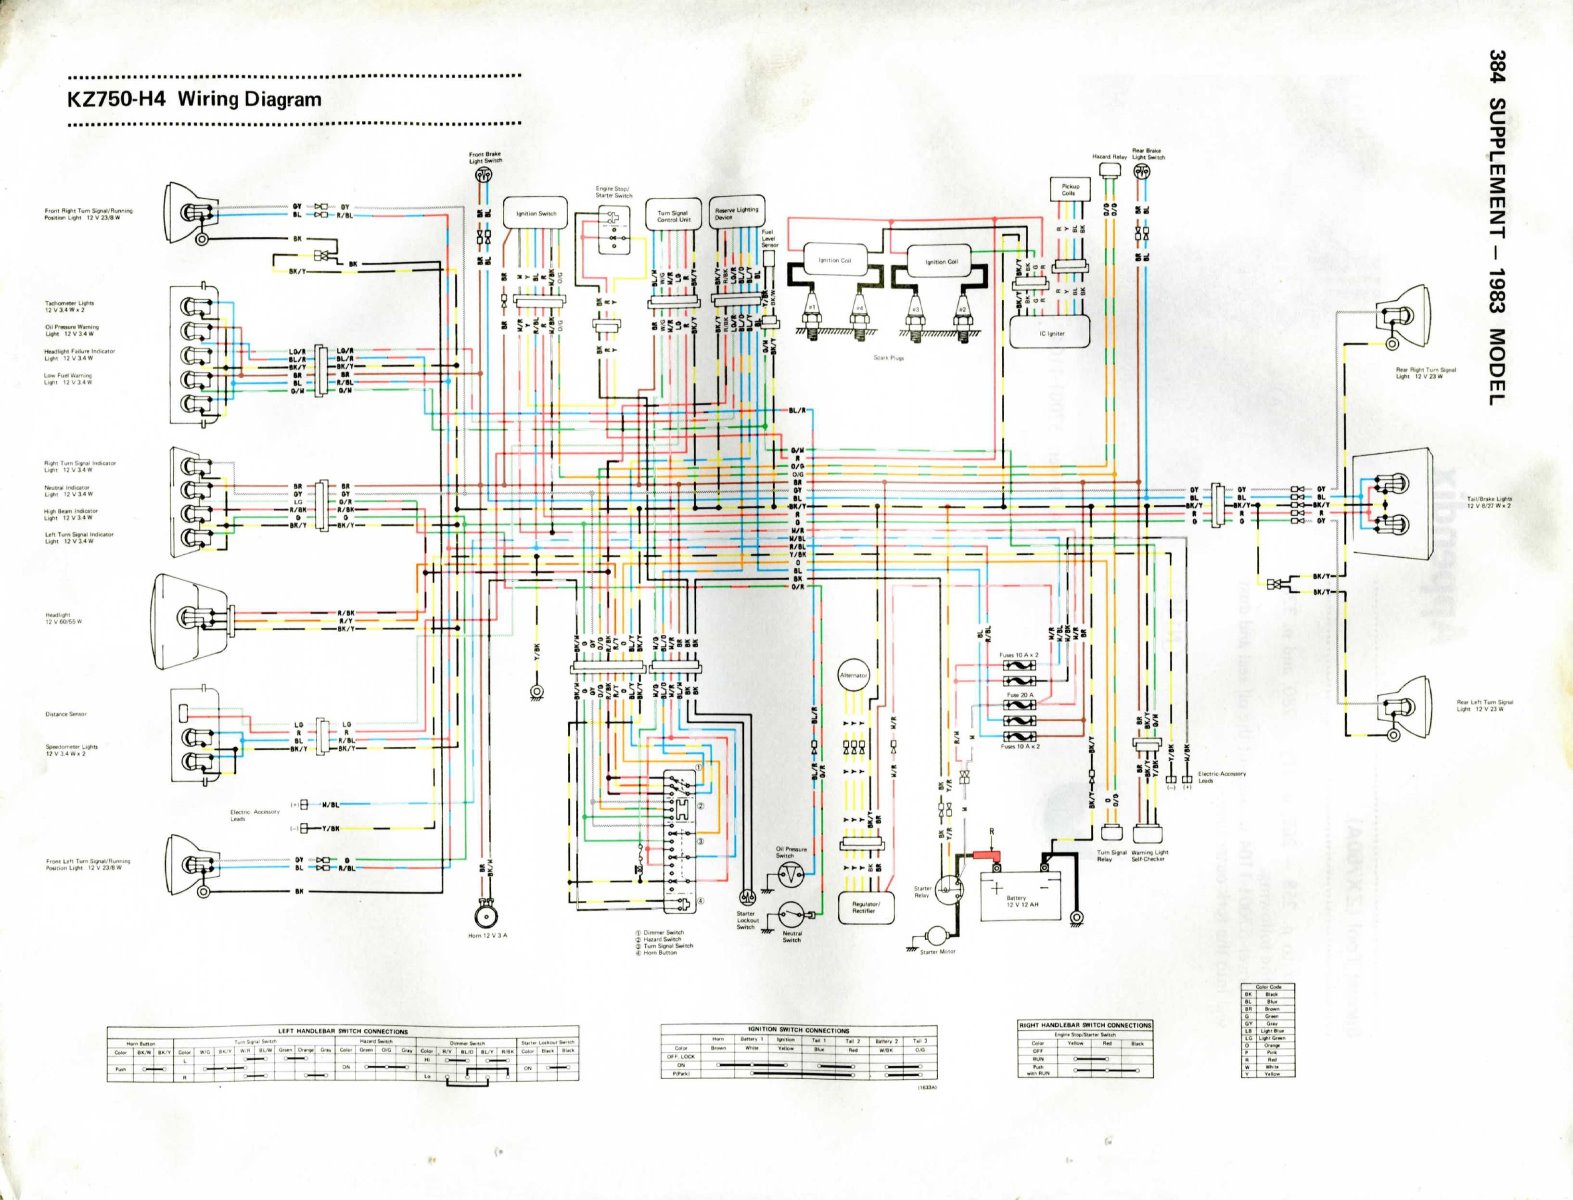 WANTED: an '84 KZ750LTD wiring diagram - KZRider Forum - KZRider, KZ